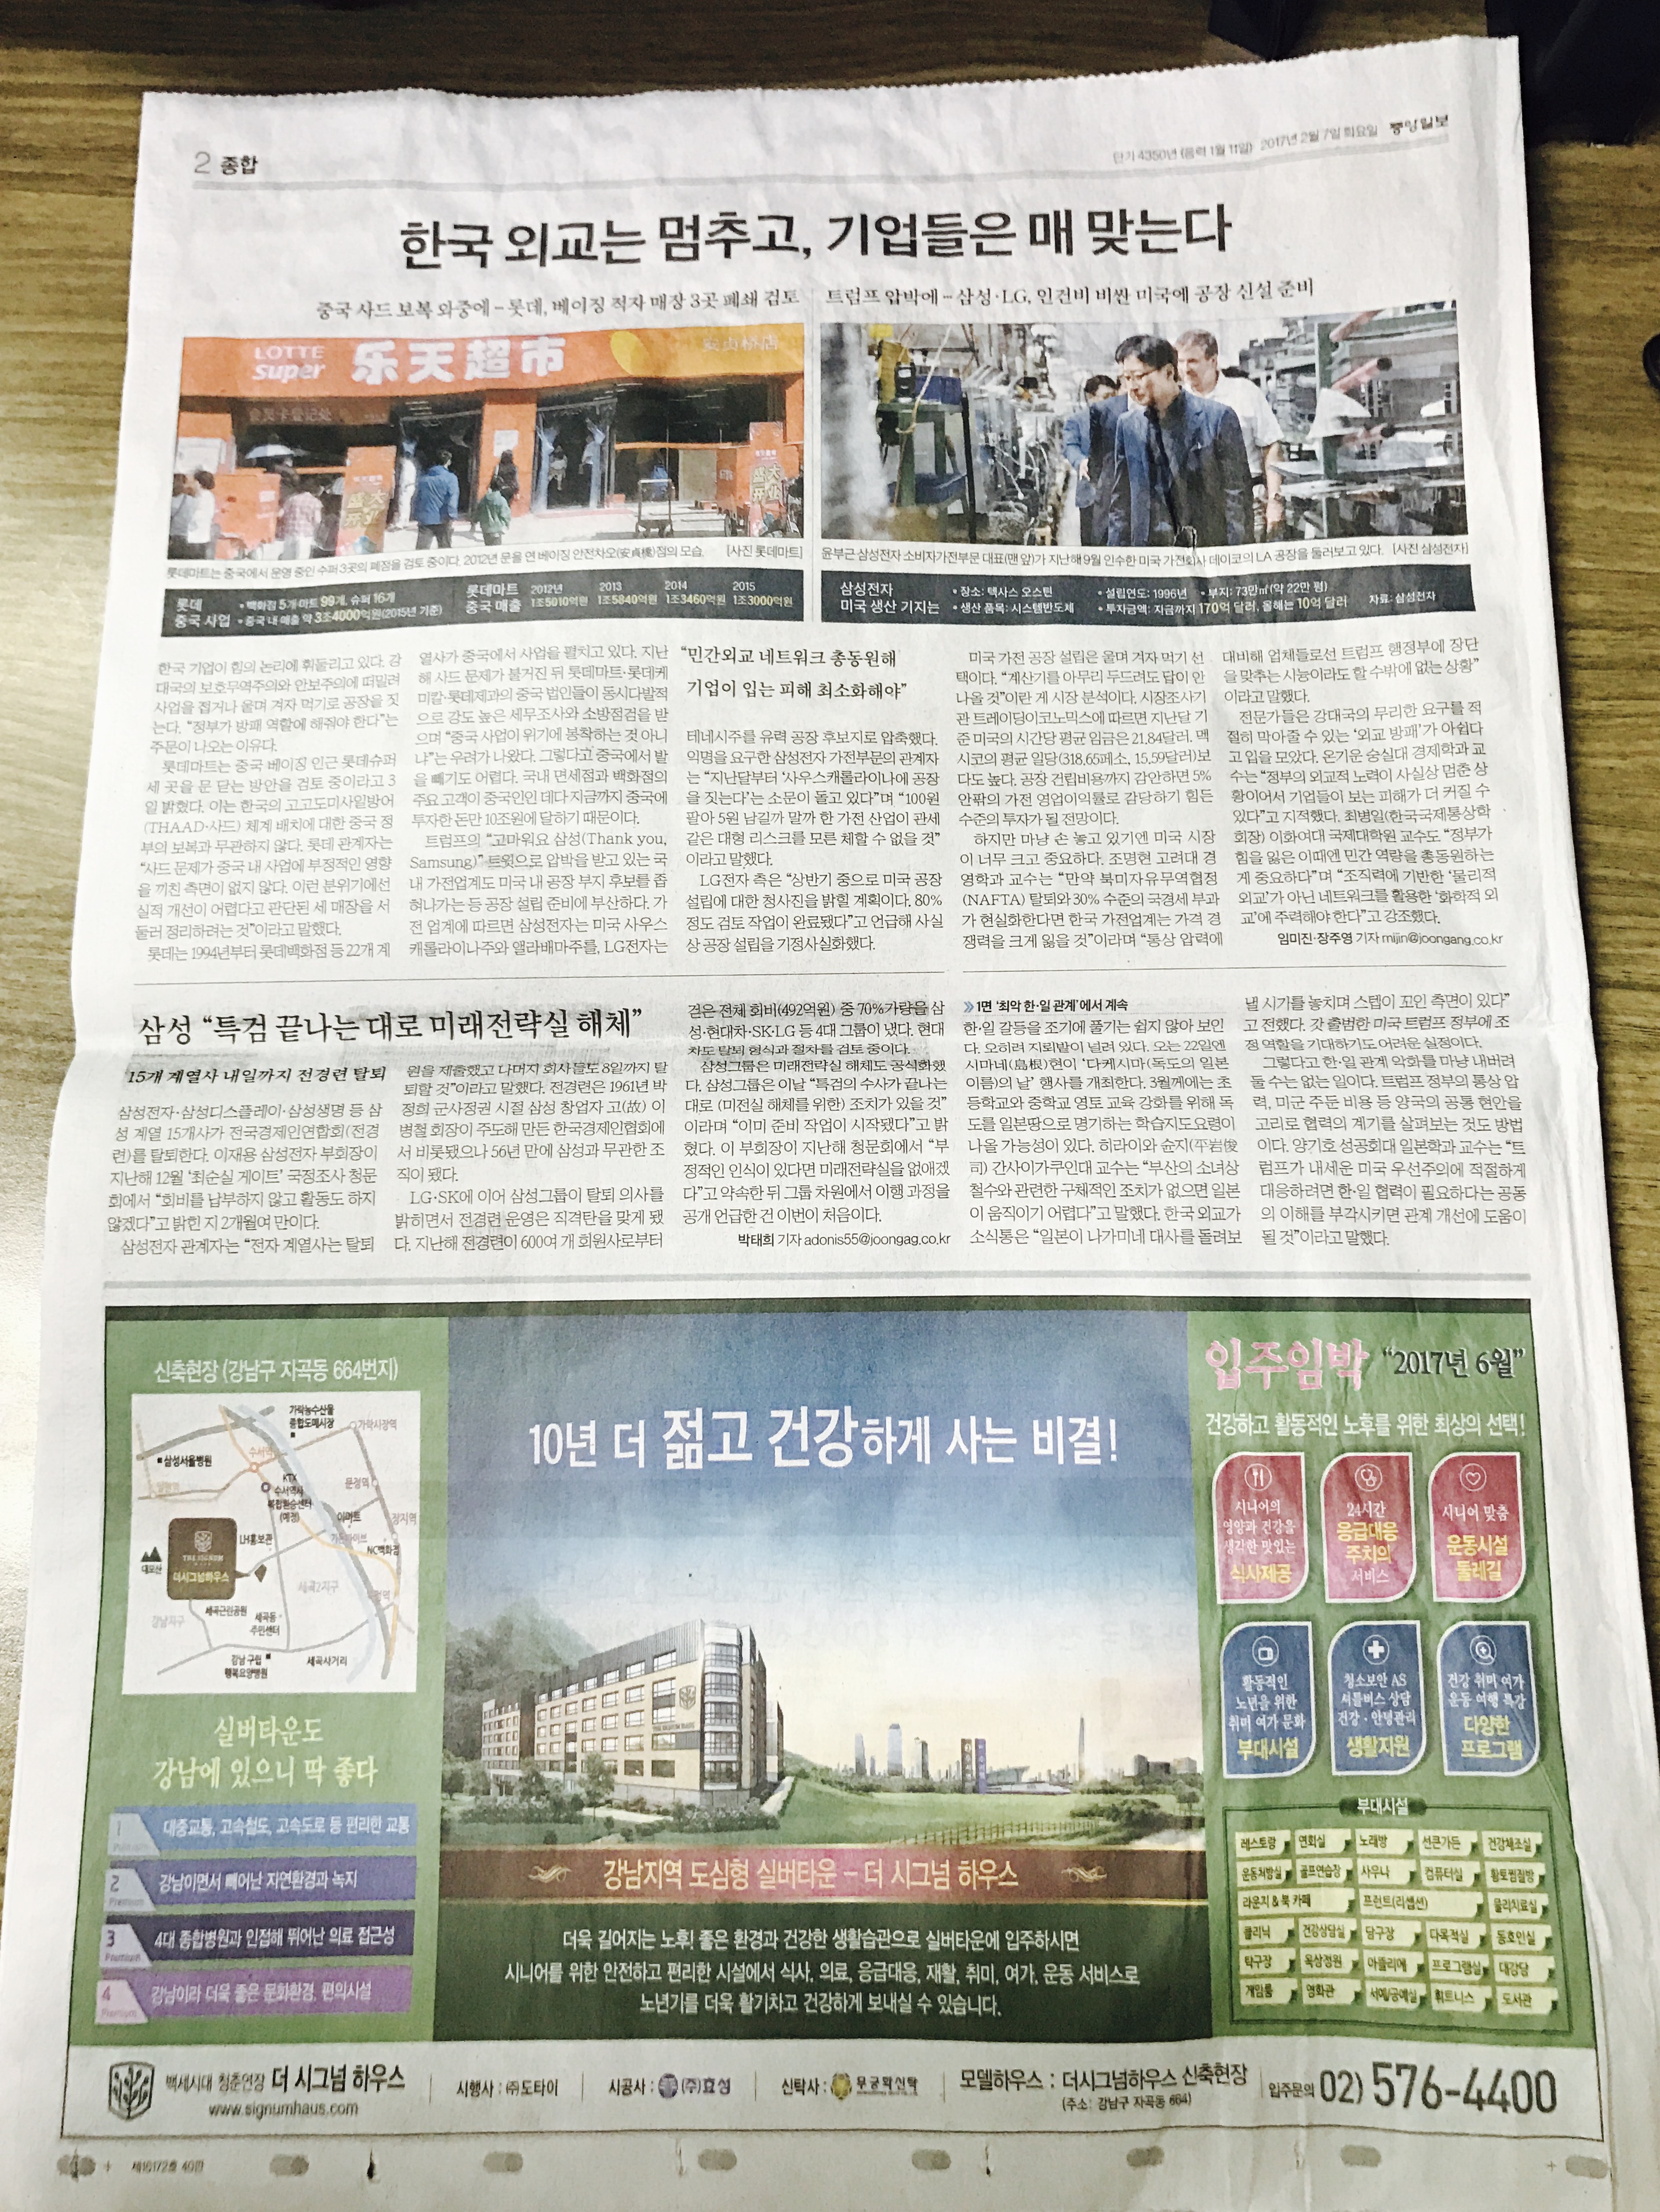 2월 7일 중앙일보 2 더 시그넘 하우스 (5단통).jpg